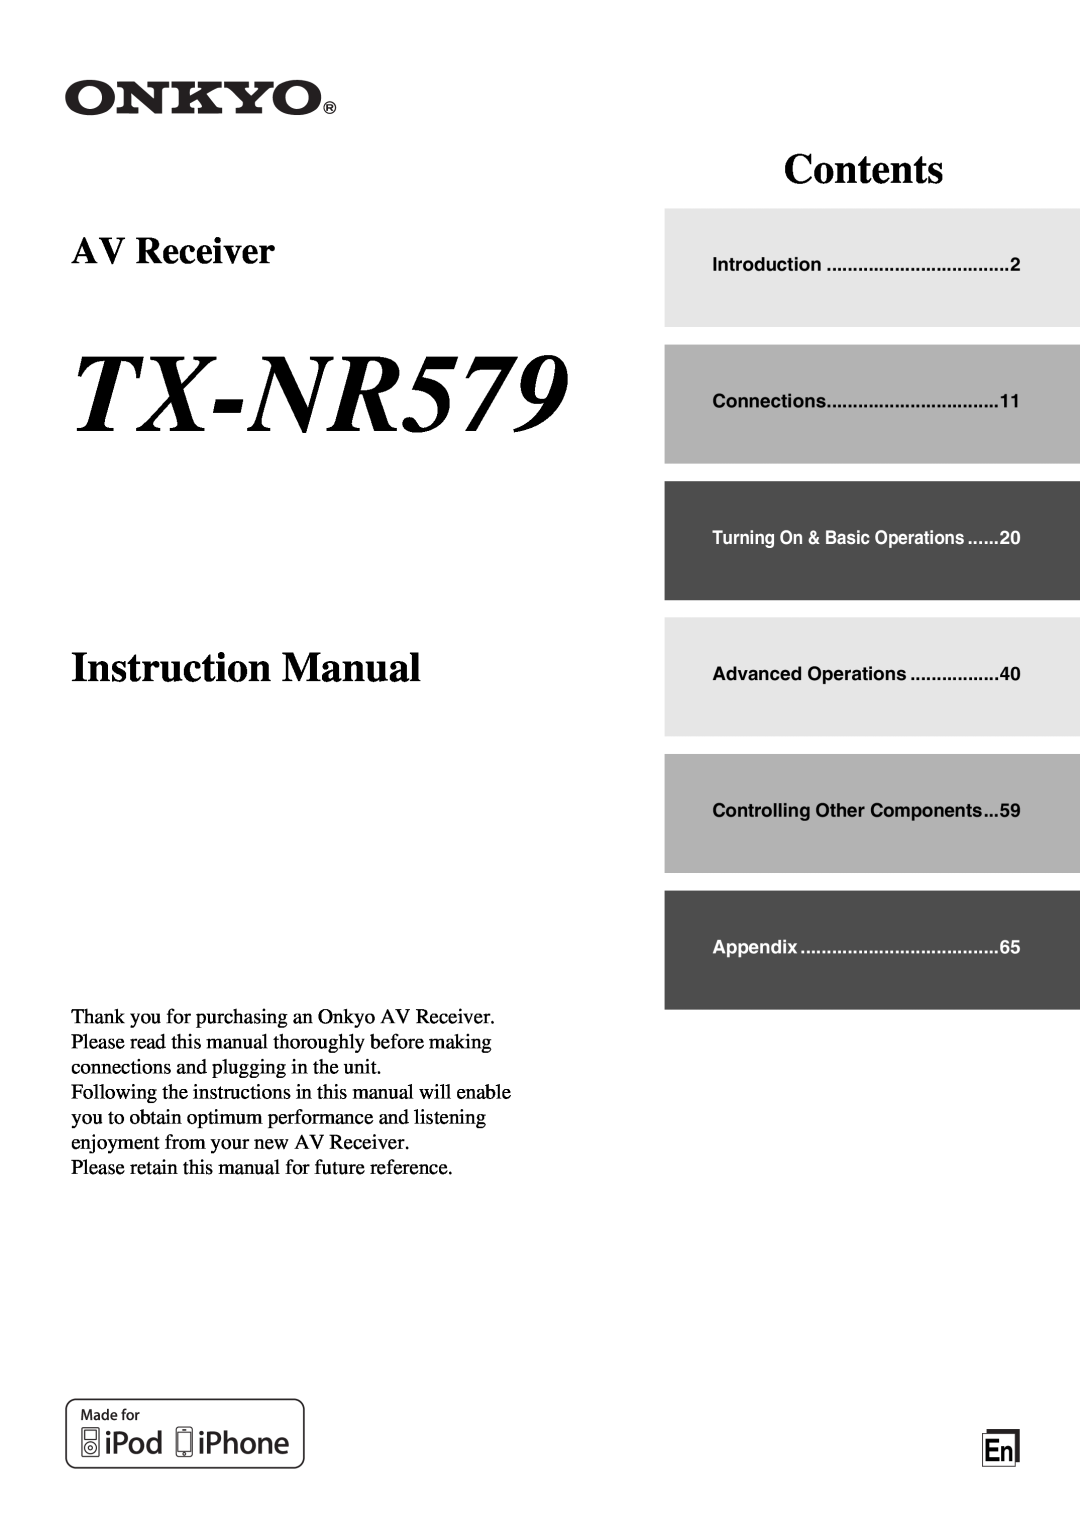 Onkyo TX-NR579 instruction manual Contents, AV Receiver 